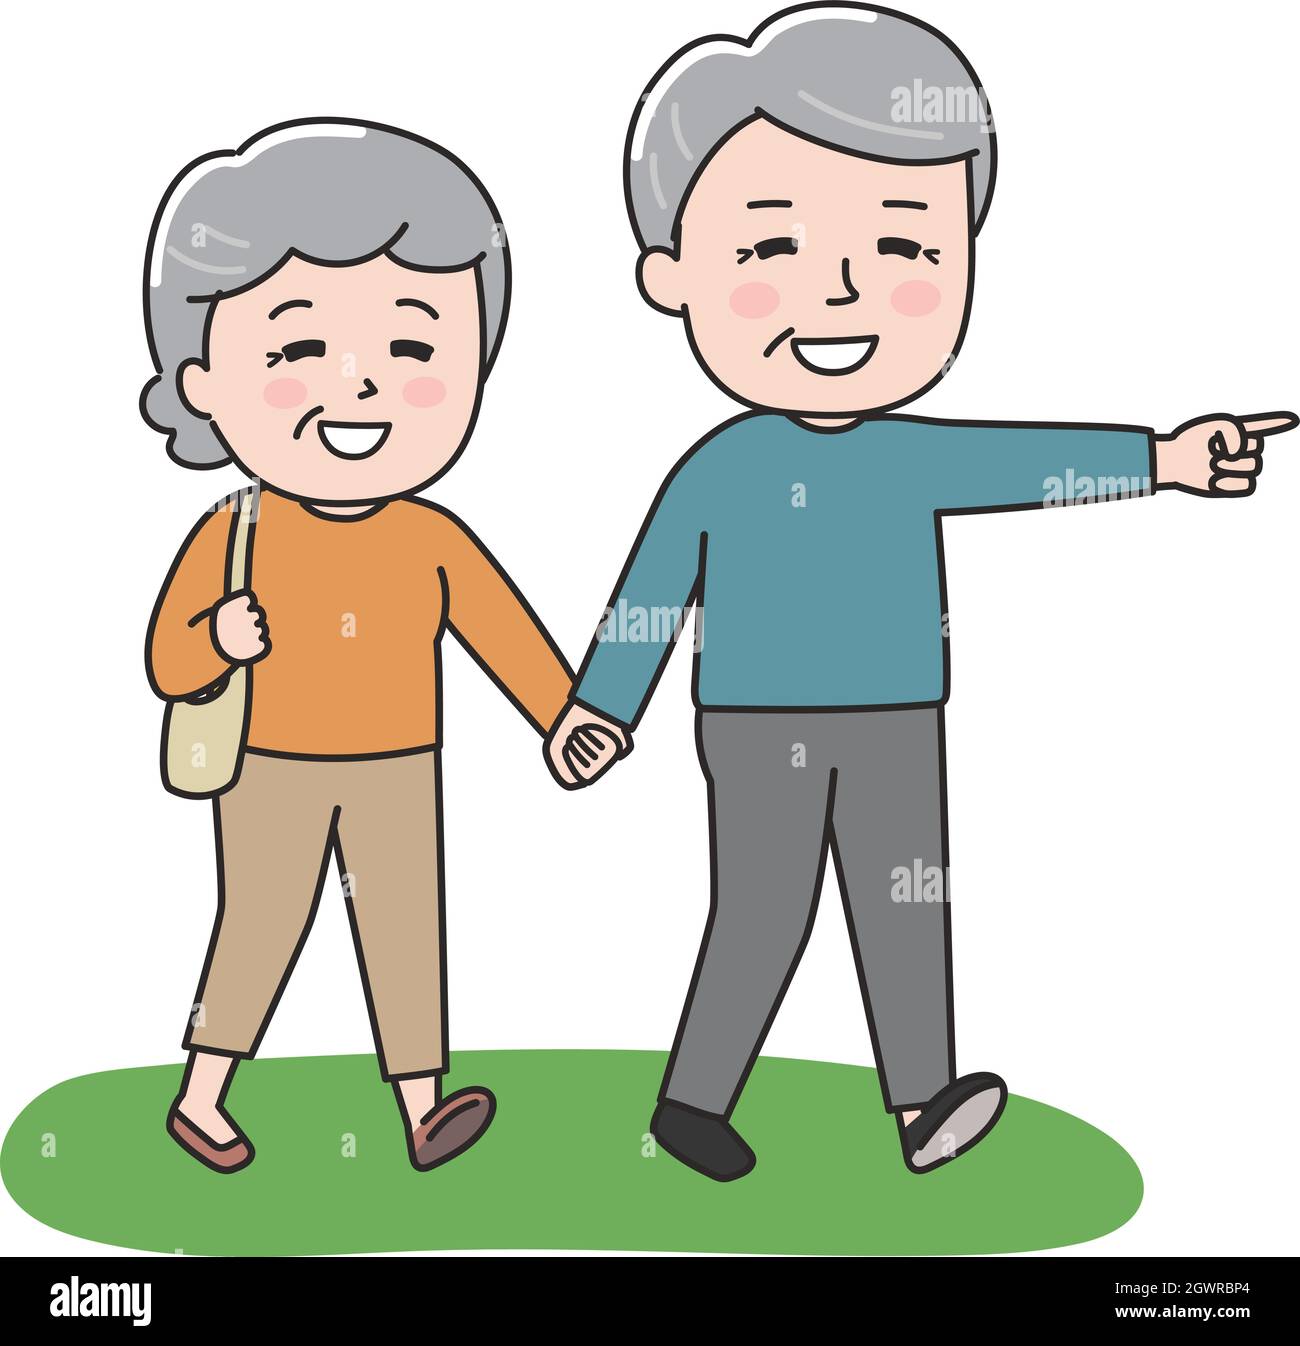 Das ältere Paar geht glücklich Hand in Hand. Vektorgrafik auf weißem Hintergrund. Stock Vektor